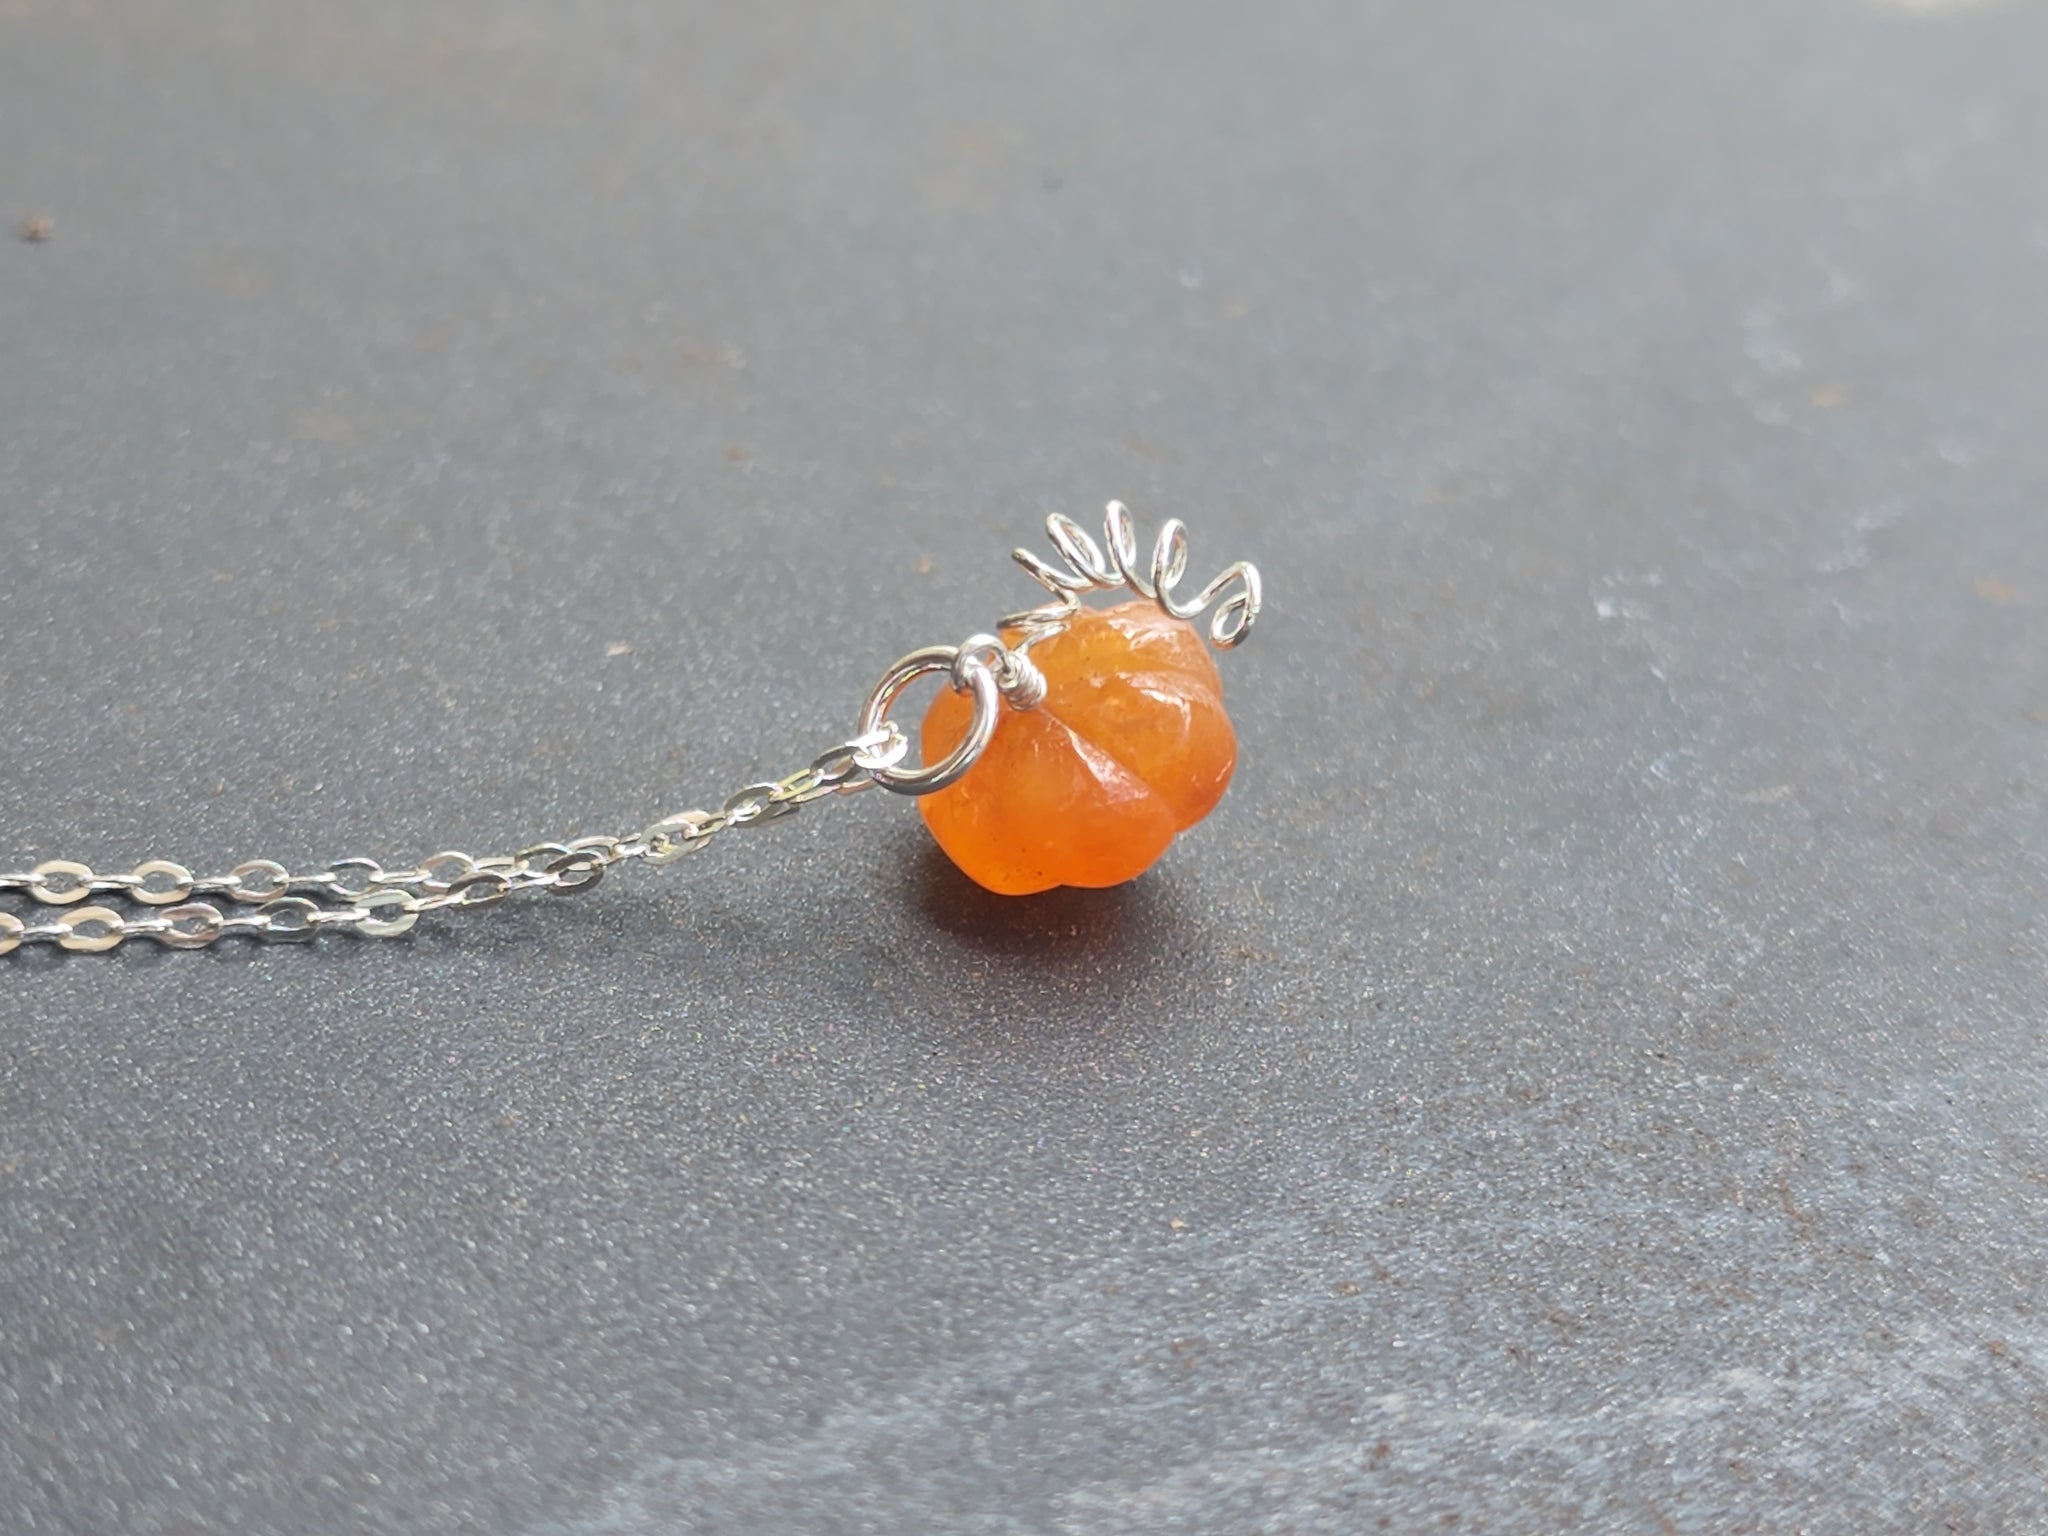 Fiery Heart necklace: Swarovski crystal pendant in orange-red on matte  black chain | Felt